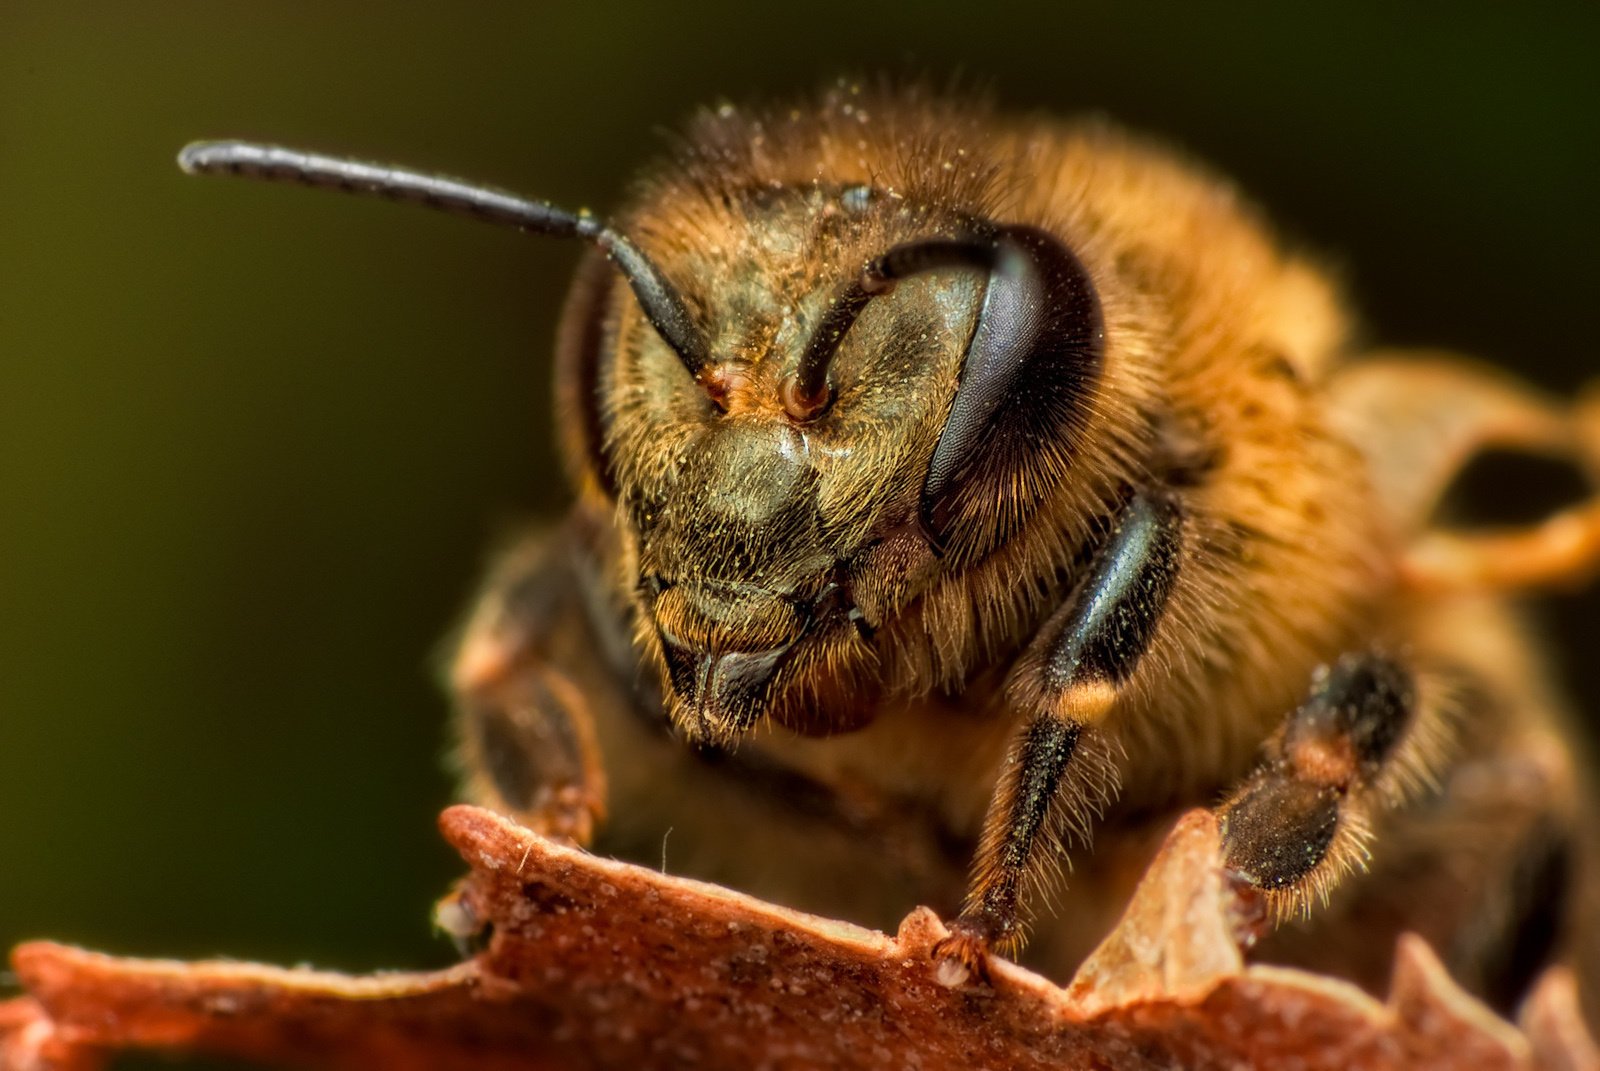 Макро съёмка пчелы в деталях